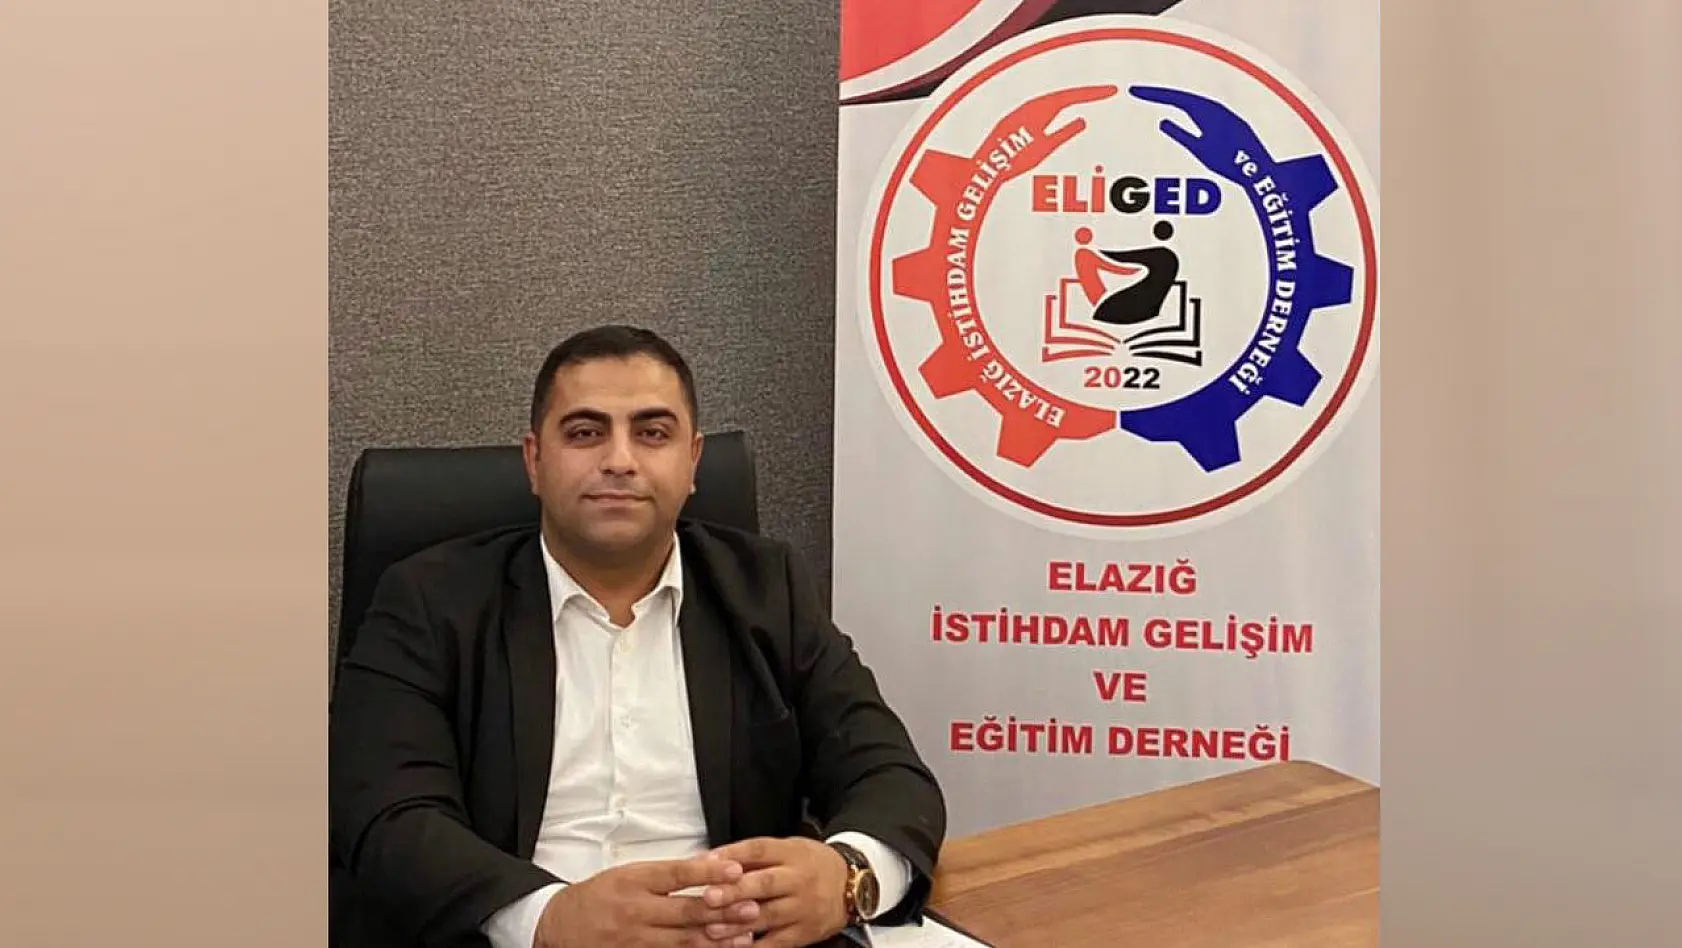 ELİGED Başkanı Telçeken: 'Yeni Sanayi Sitesi Yeni İstihdam Sağlayacak'